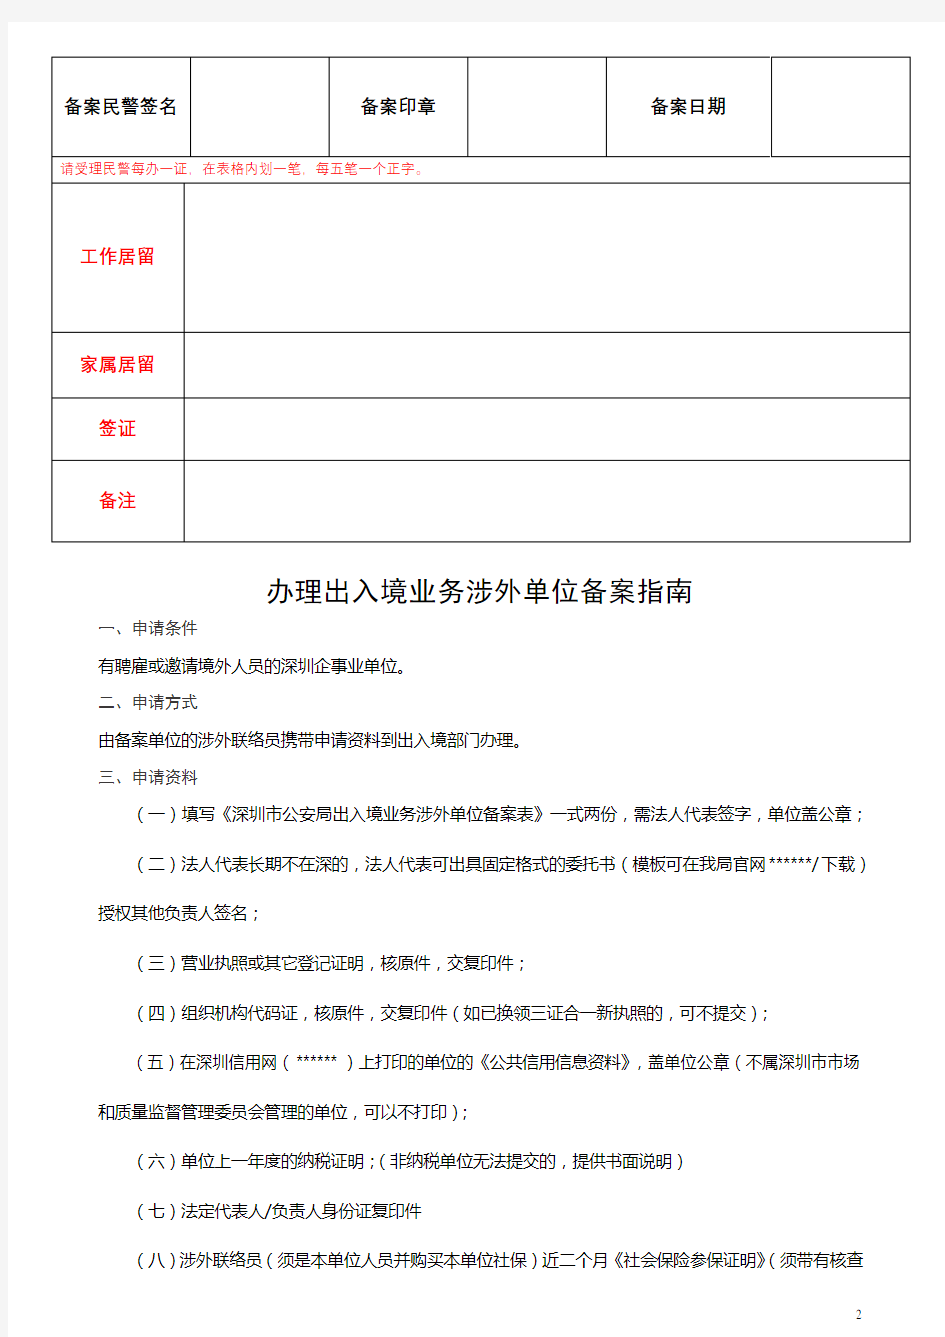 深圳市公安局出入境业务涉外单位备案表【模板】